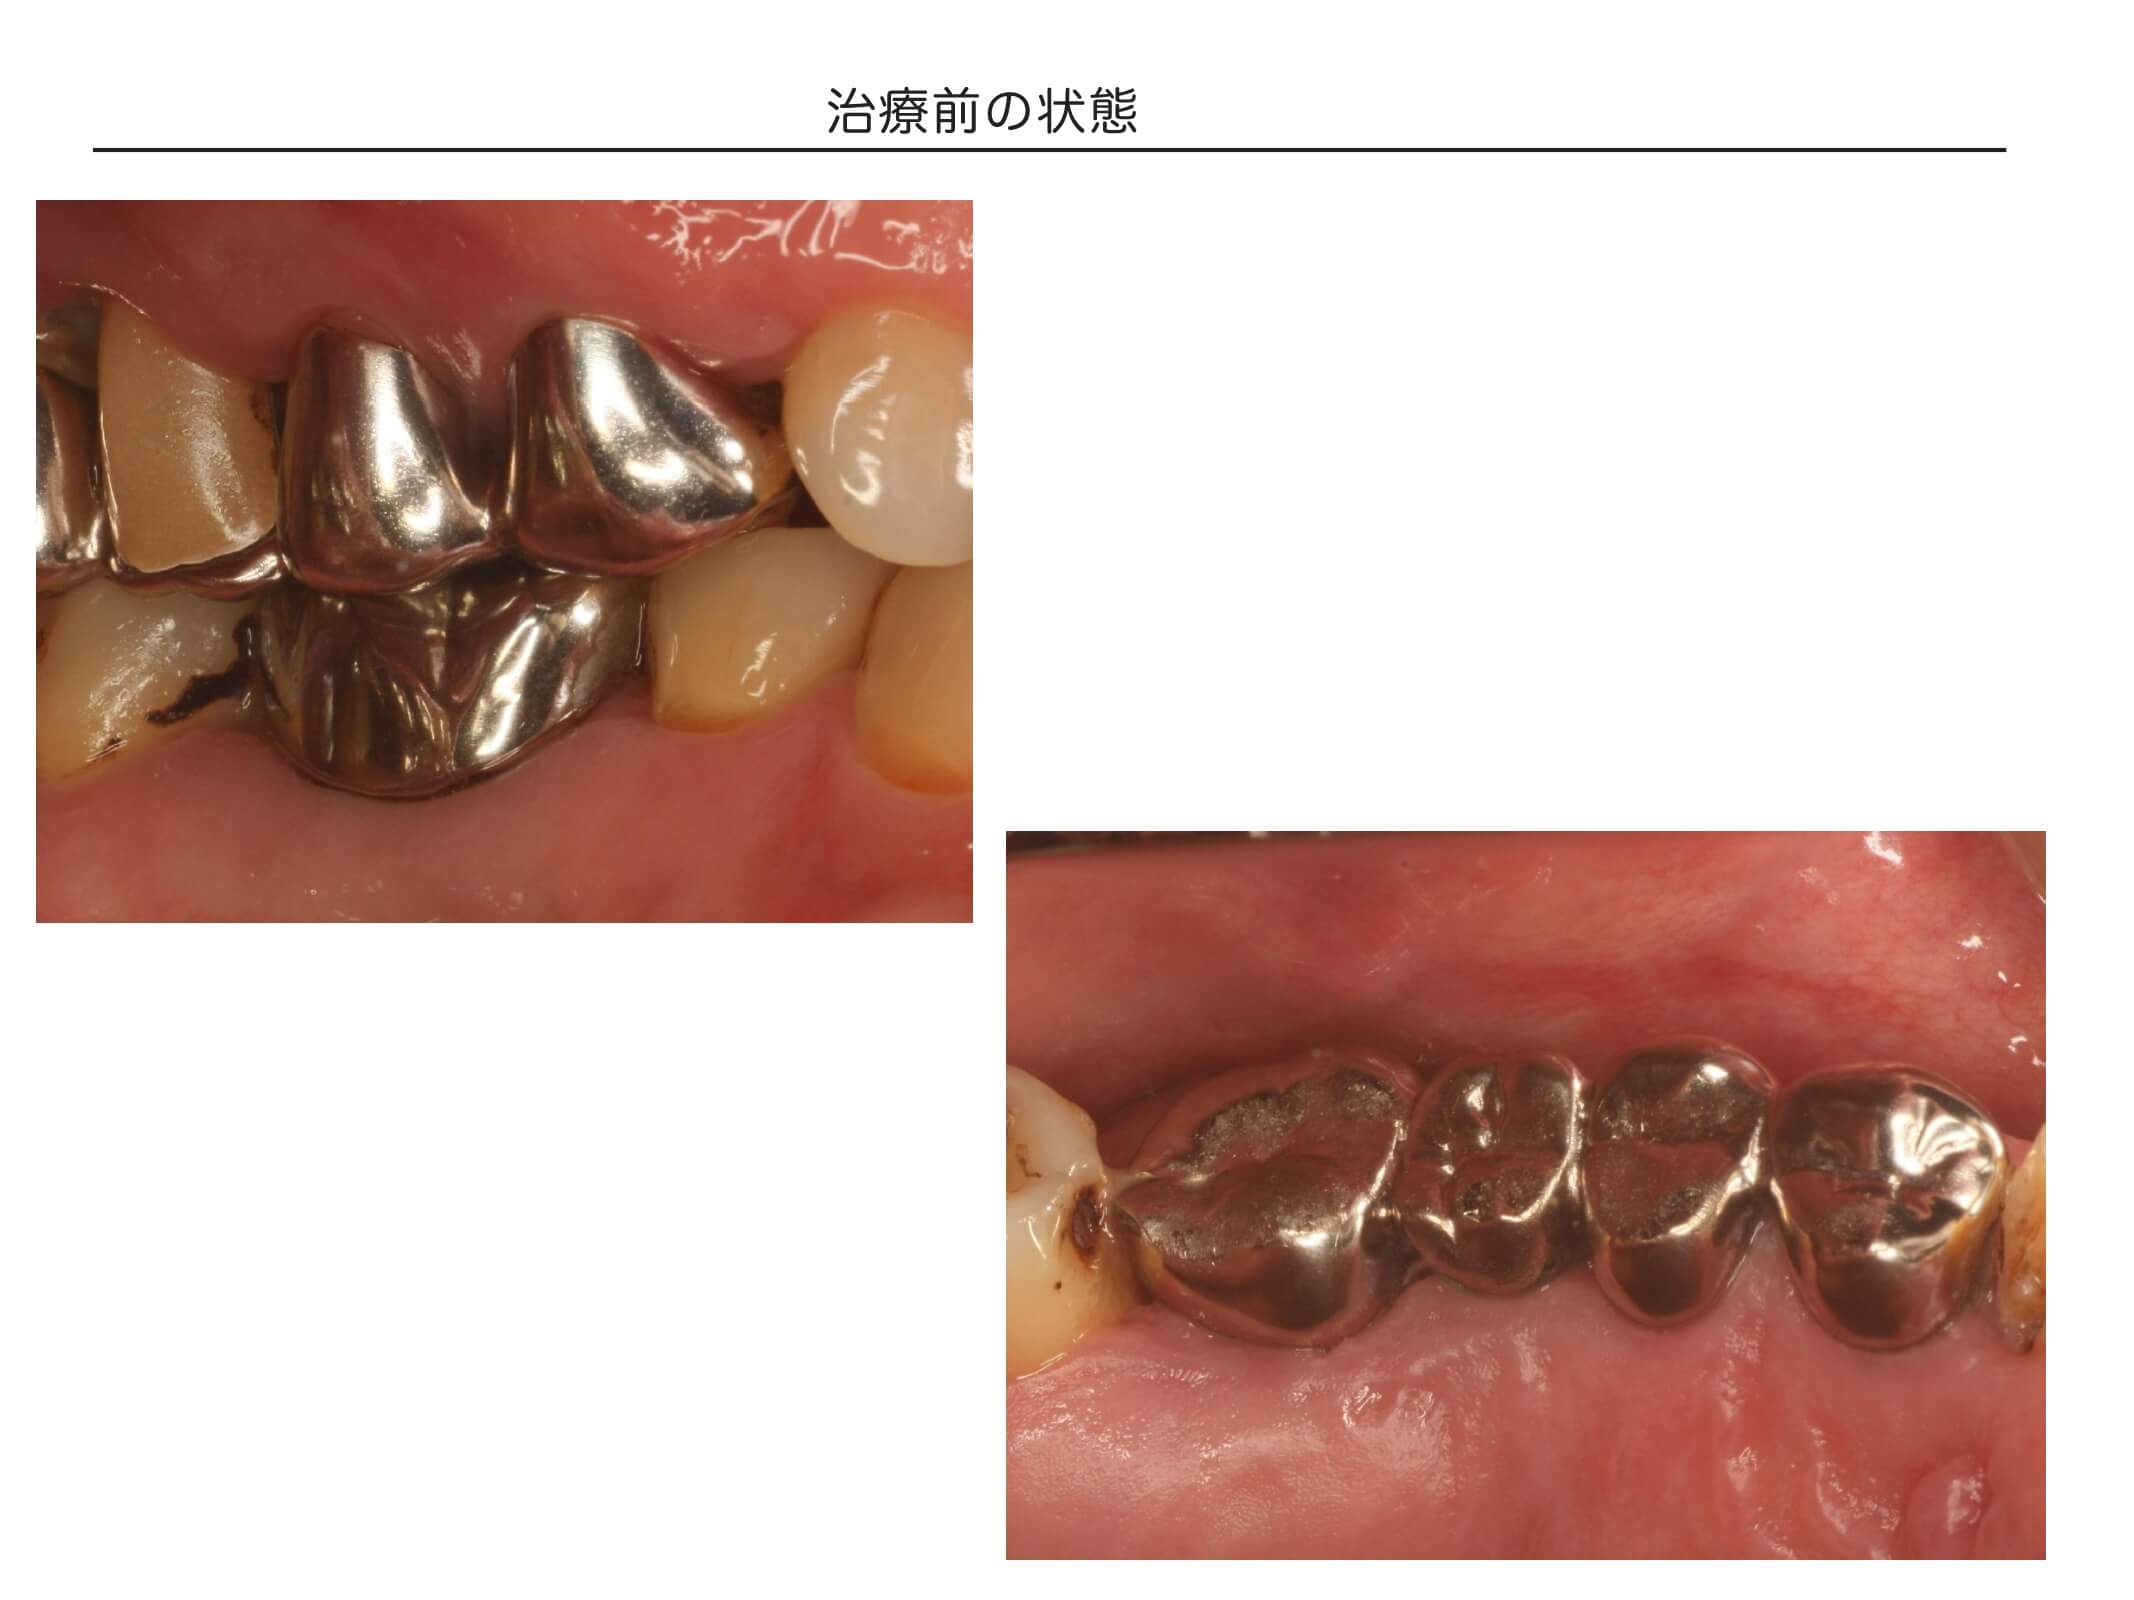 複数歯の症例2